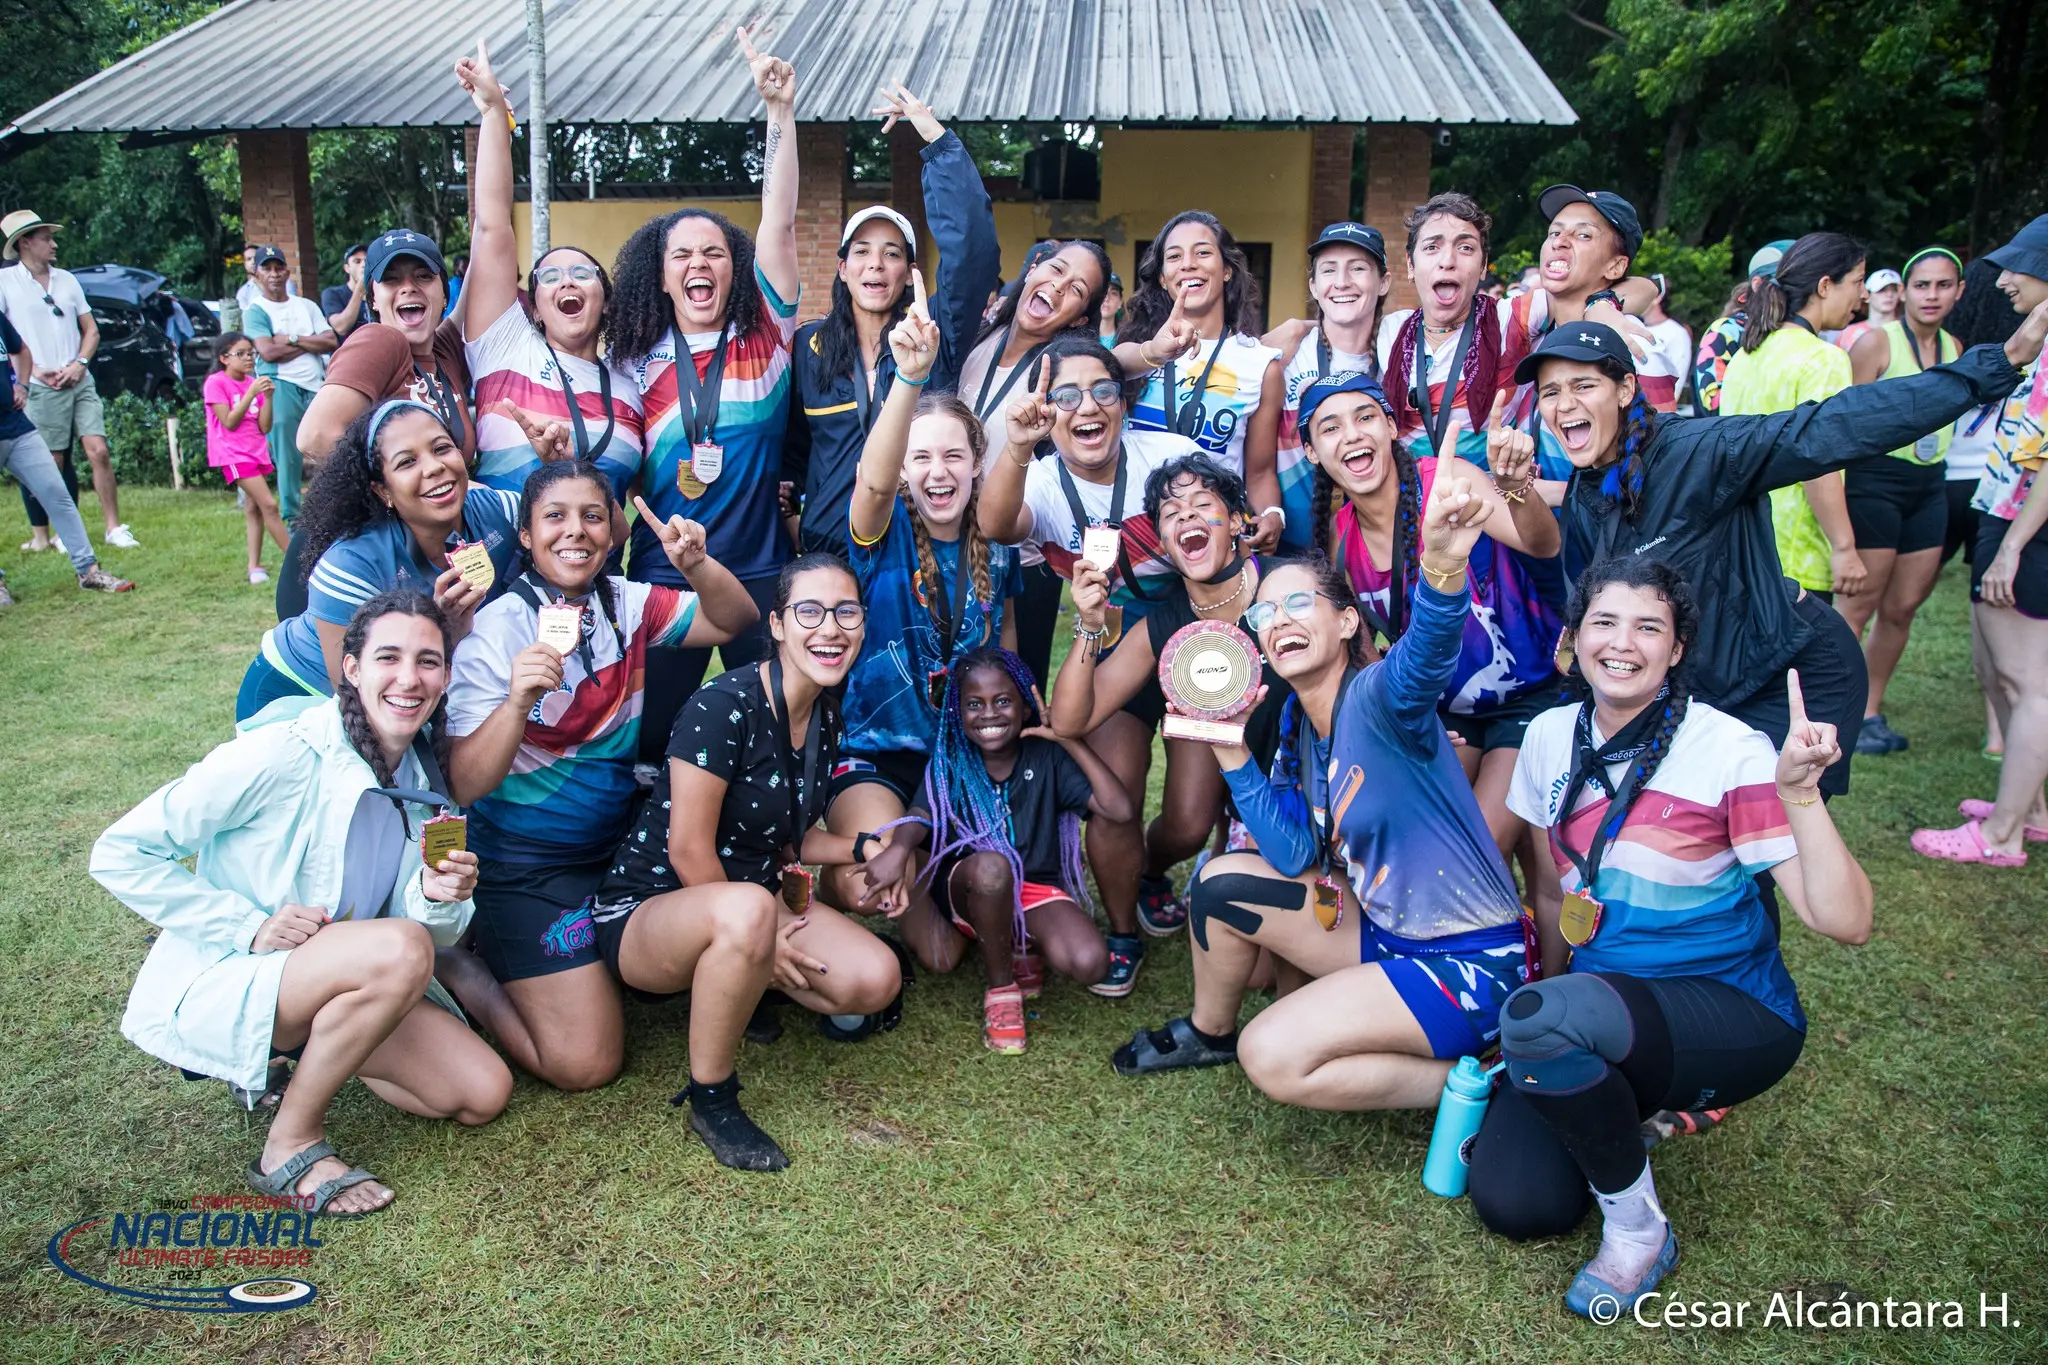 Bohemias celebrando su segundo triunfo en el campeonato Nacional de Ultimate Frisbee de la República Dominicana